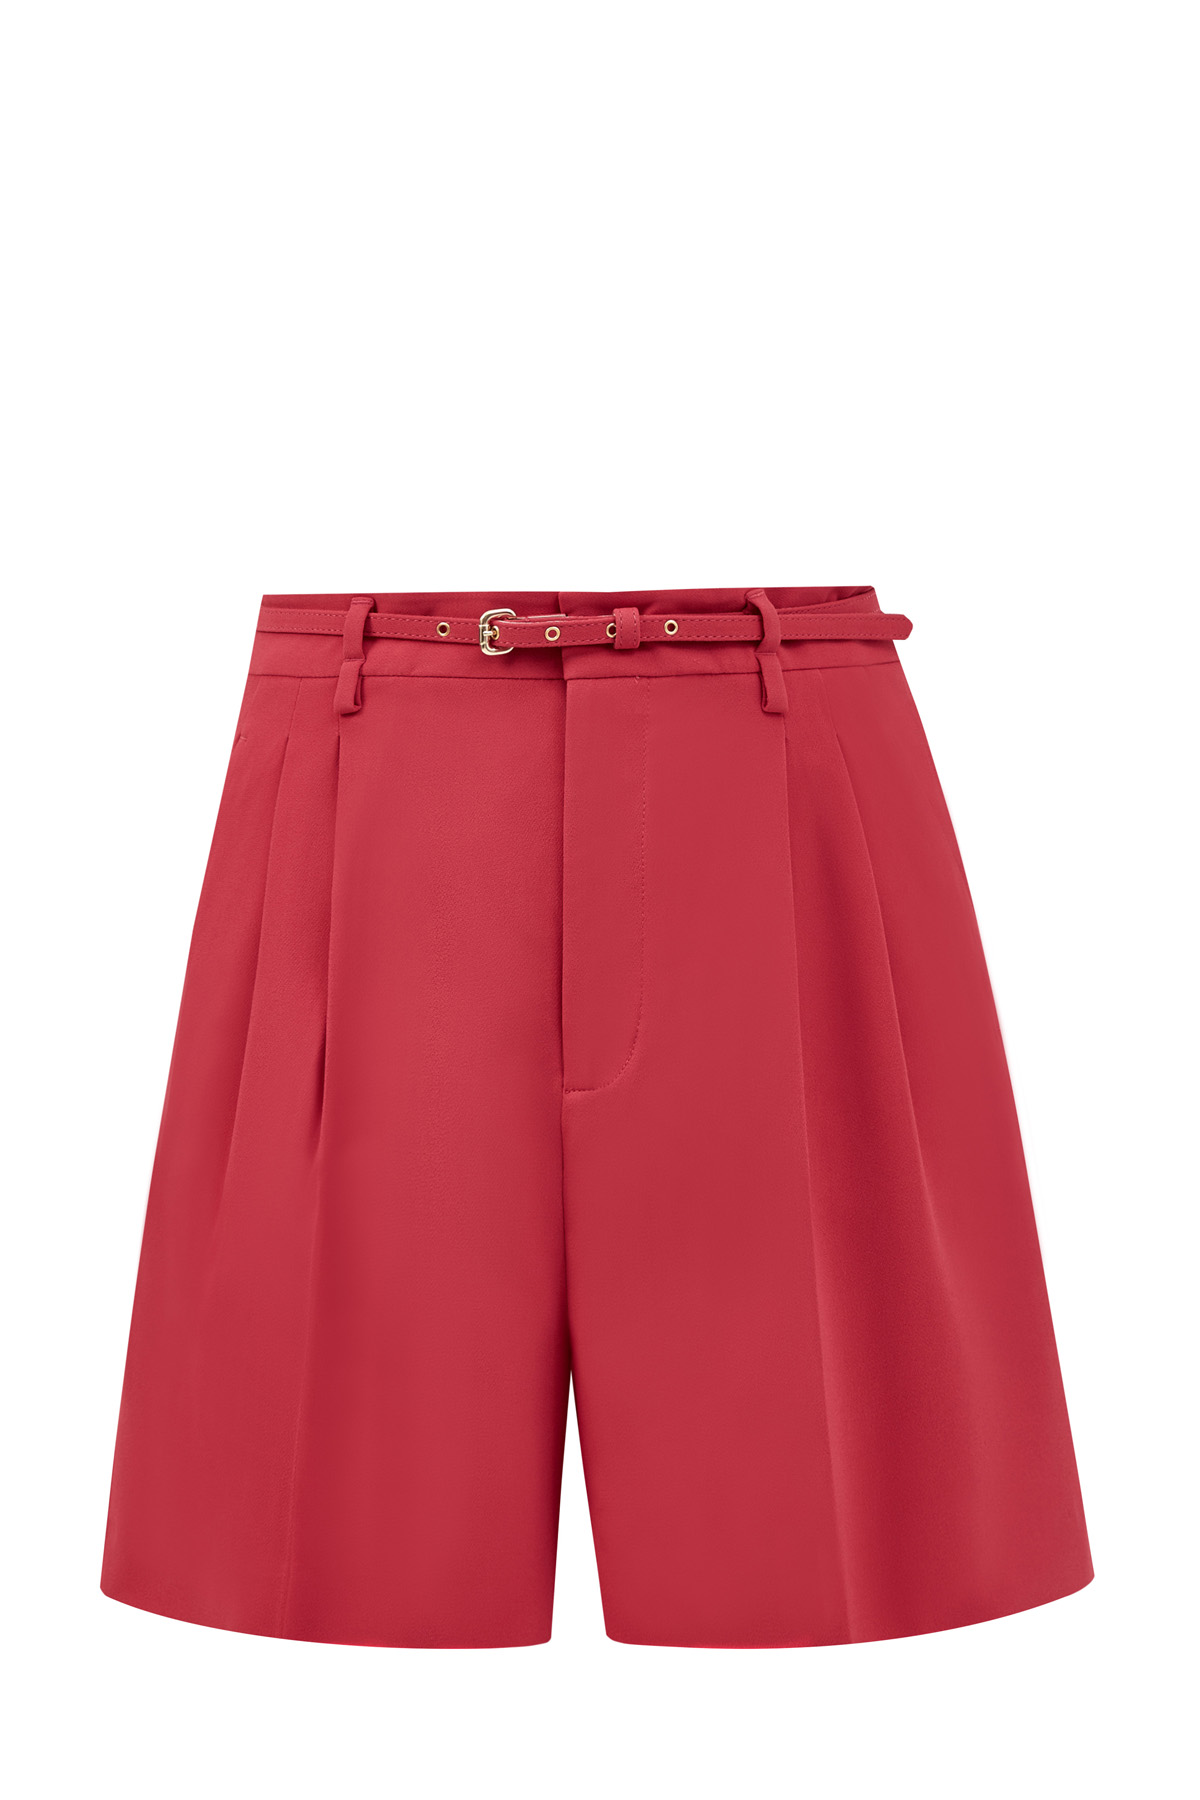 Яркие шорты из сатина на высокой посадке с тонким съемным ремнем REDVALENTINO, цвет красный, размер S